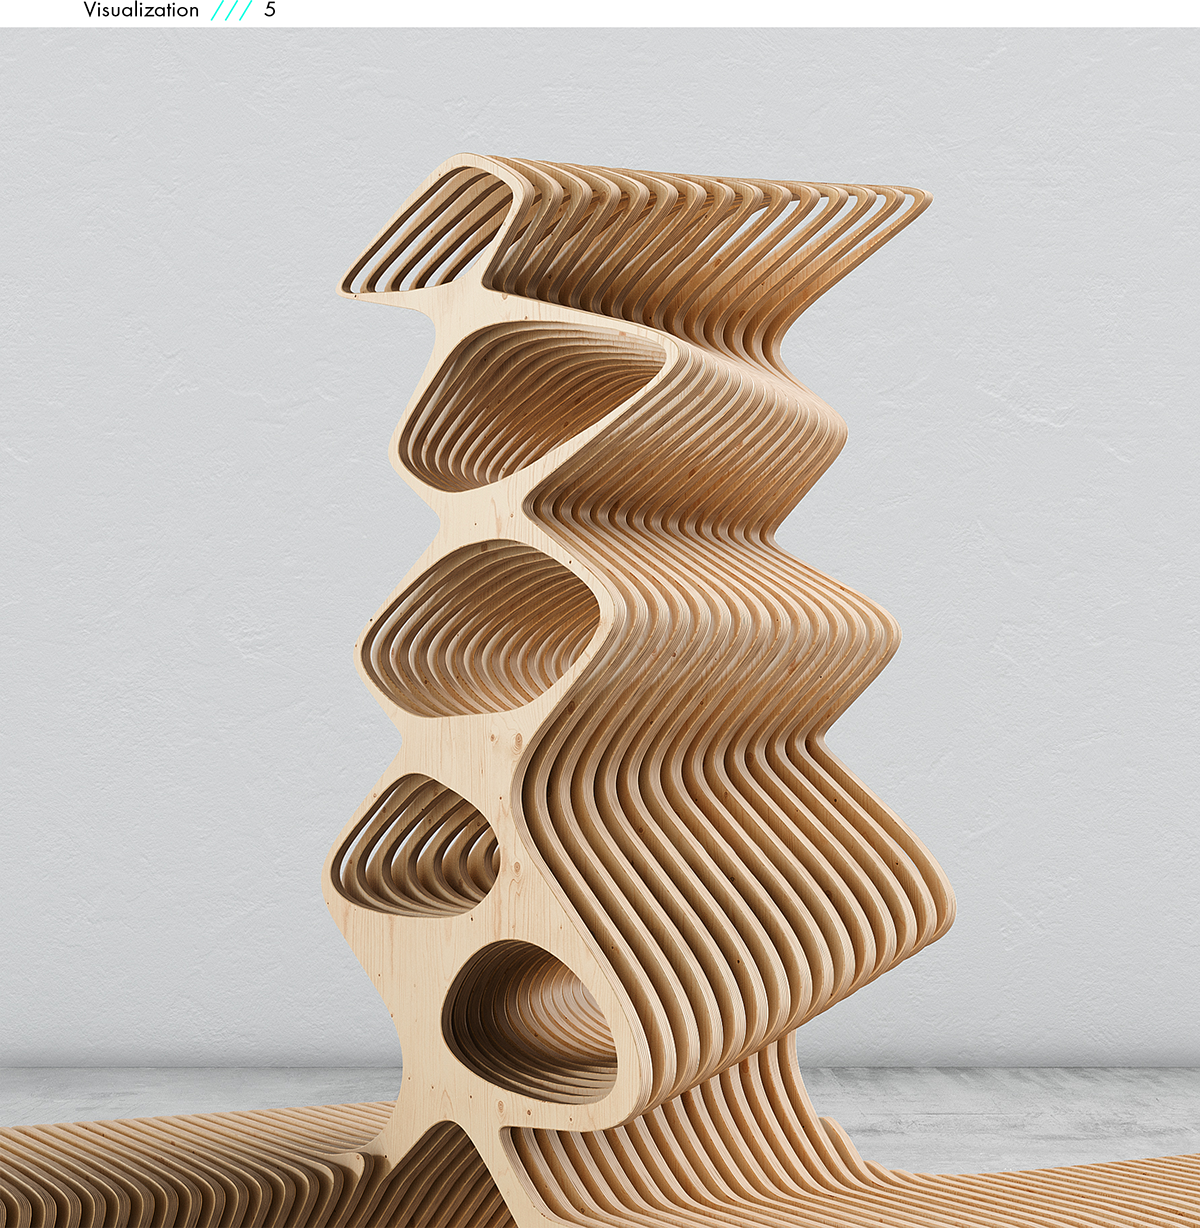 generative curves furniture modernfurniture design Digitalartist Modernart plywood ogranic Form